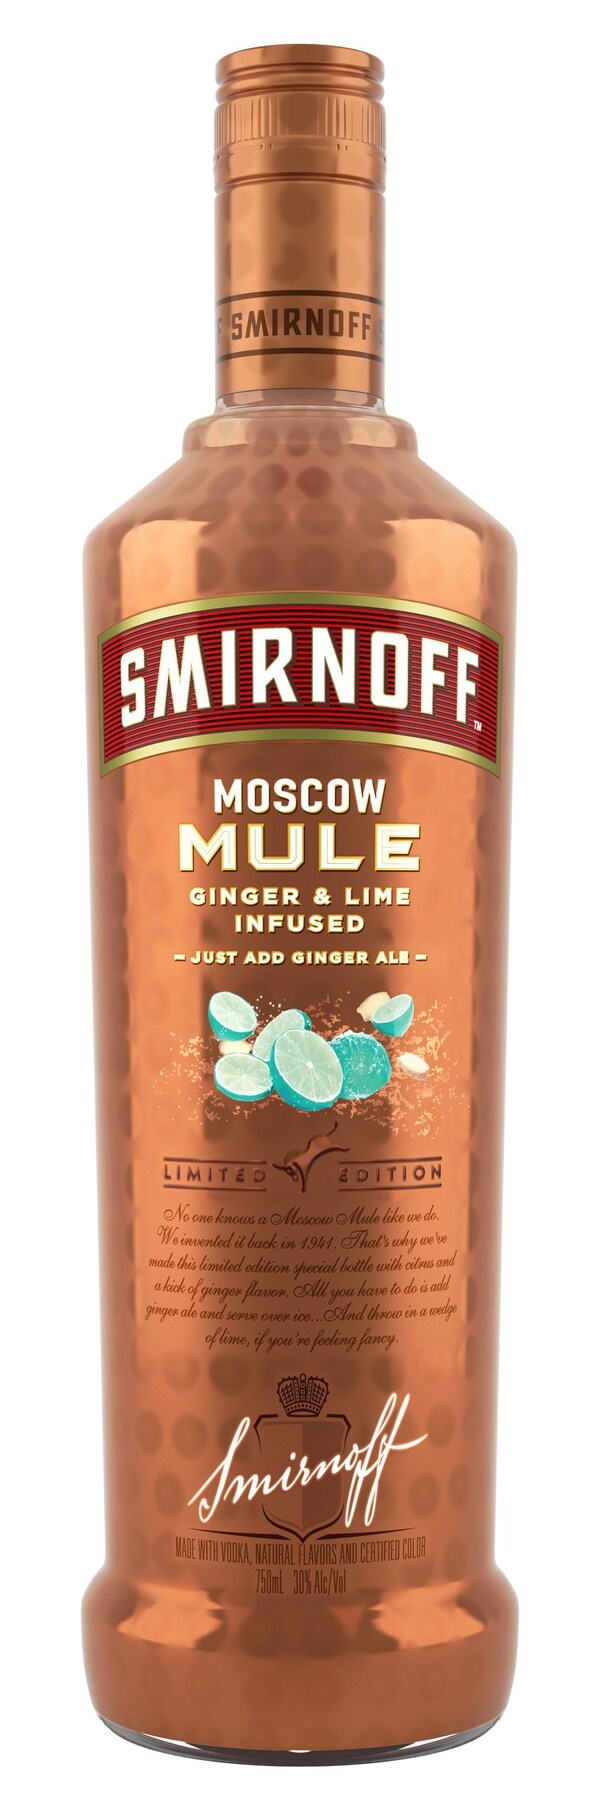 Smirnoff Moscow Mule Bottle